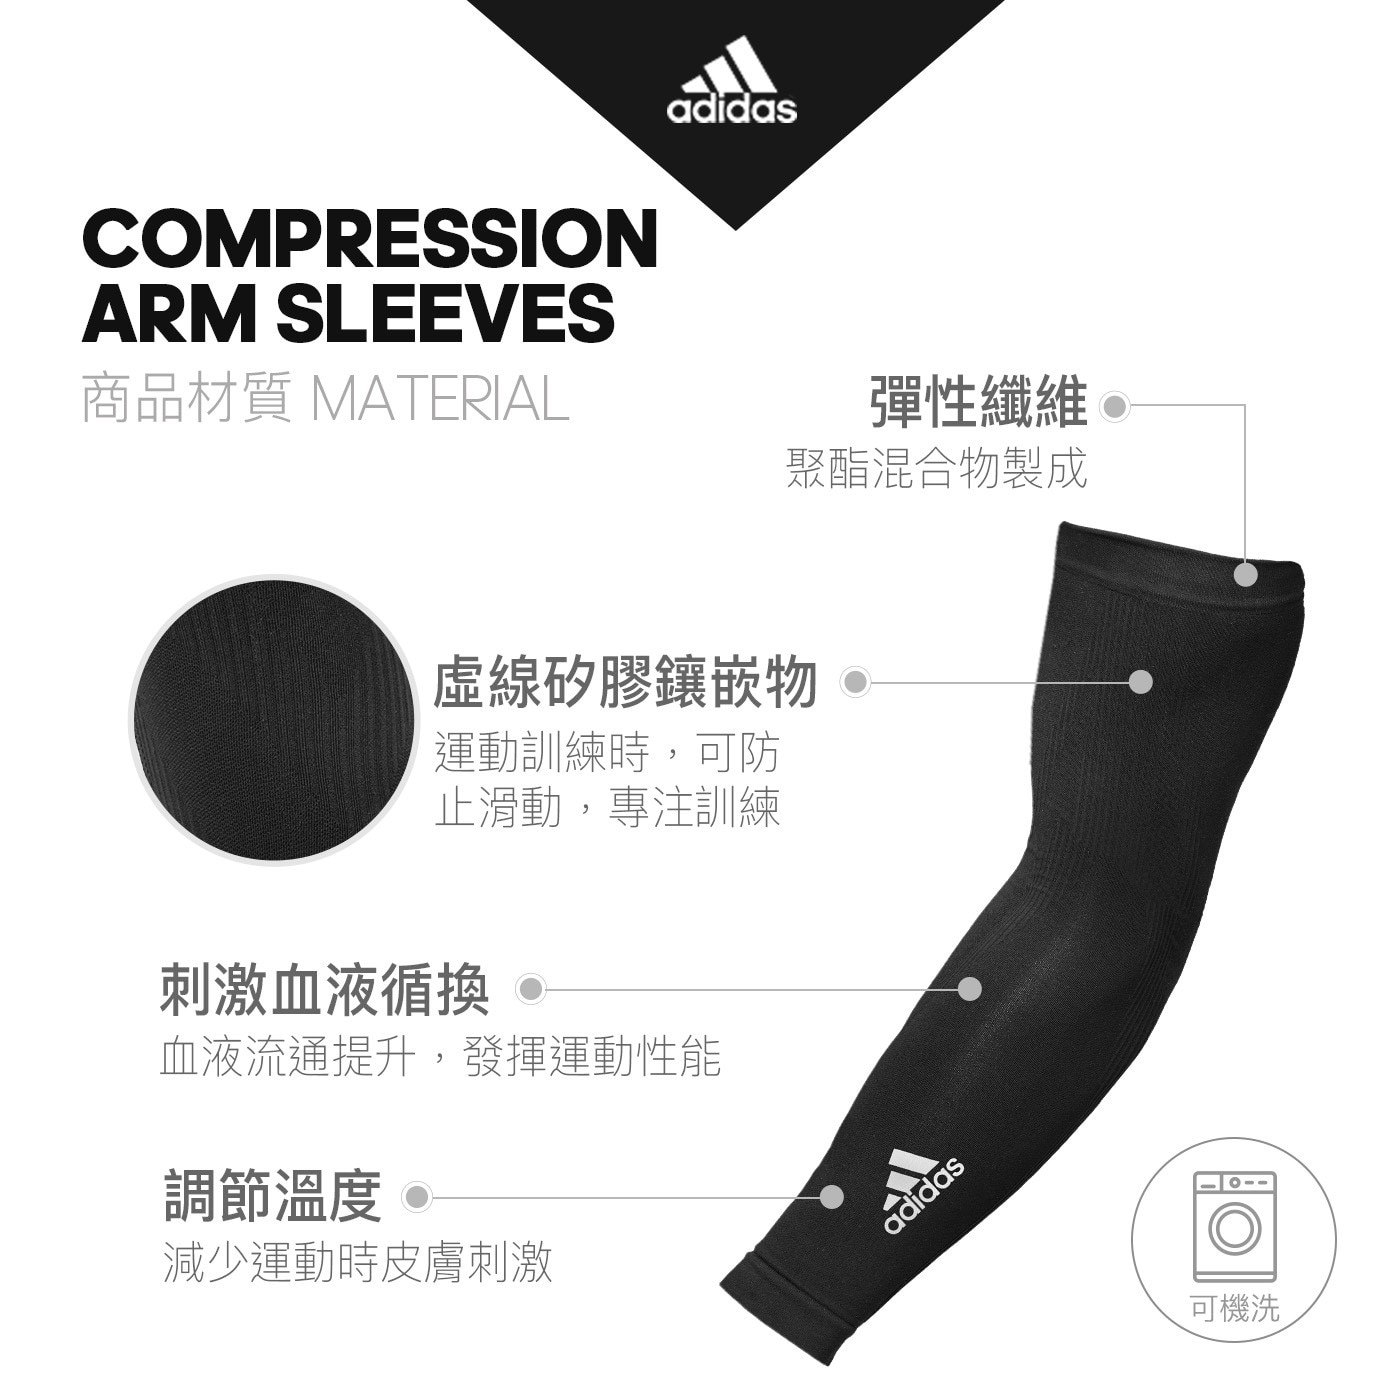 Adidas 機能壓縮袖套彈性纖維虛線矽膠鑲嵌物刺激血液循環調節溫度